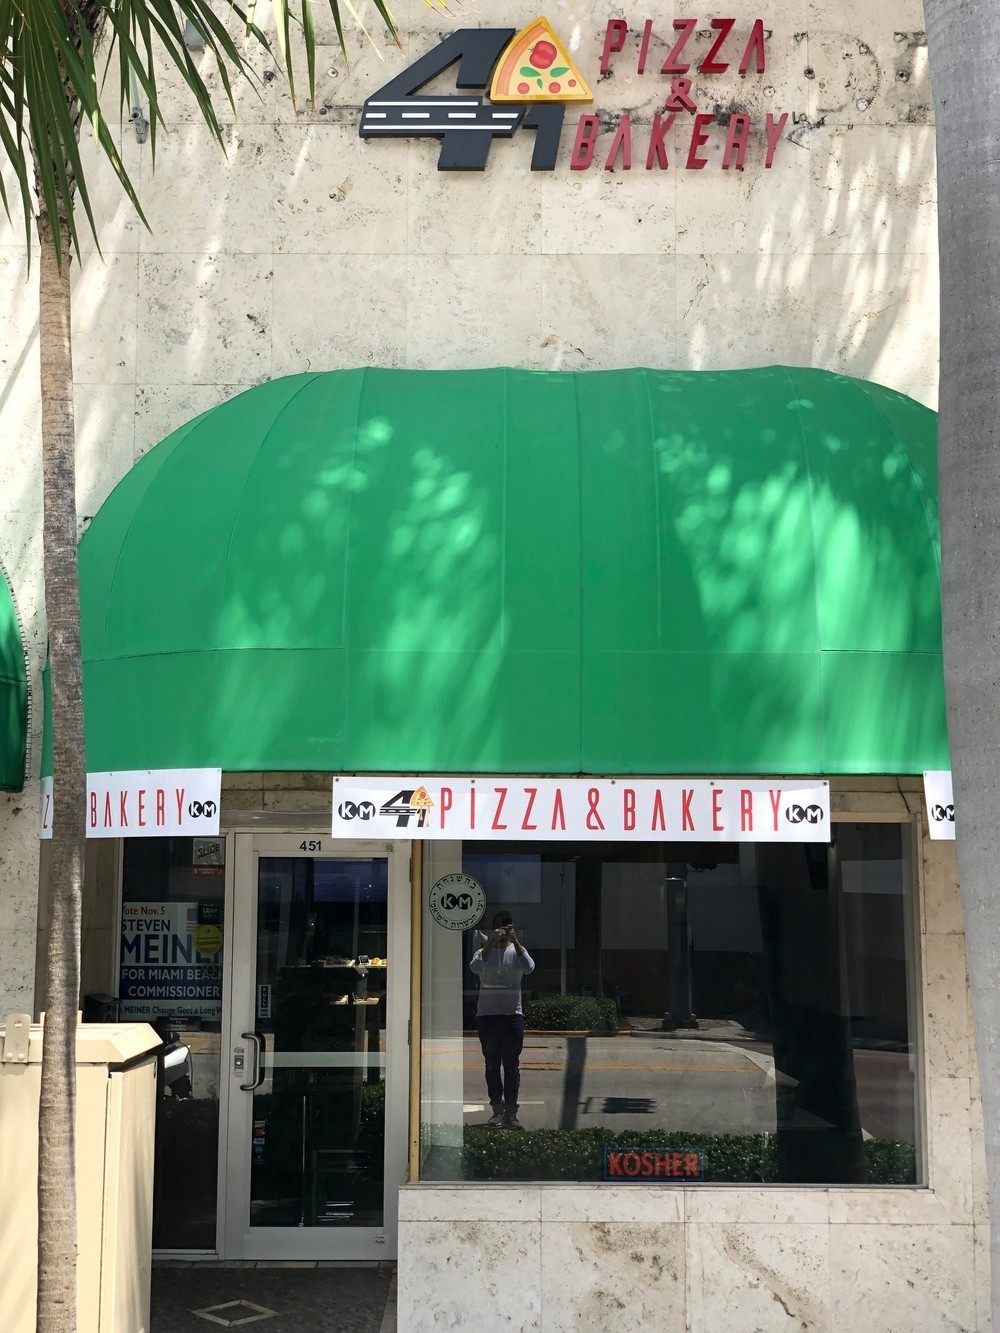 41 Pizza and Bakery Miami Beach